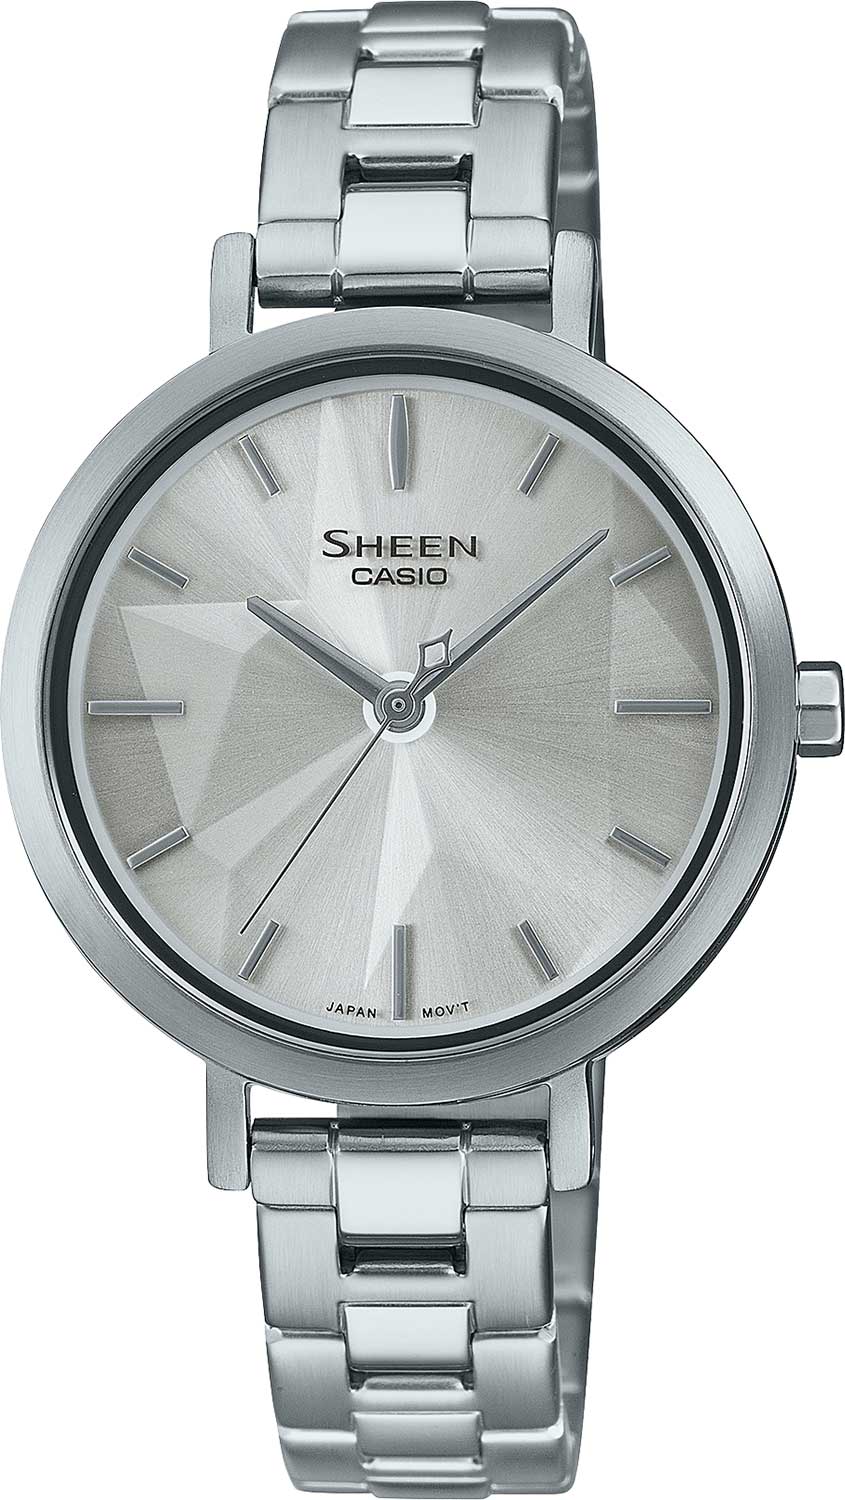    Casio Sheen SHE-4558D-7A